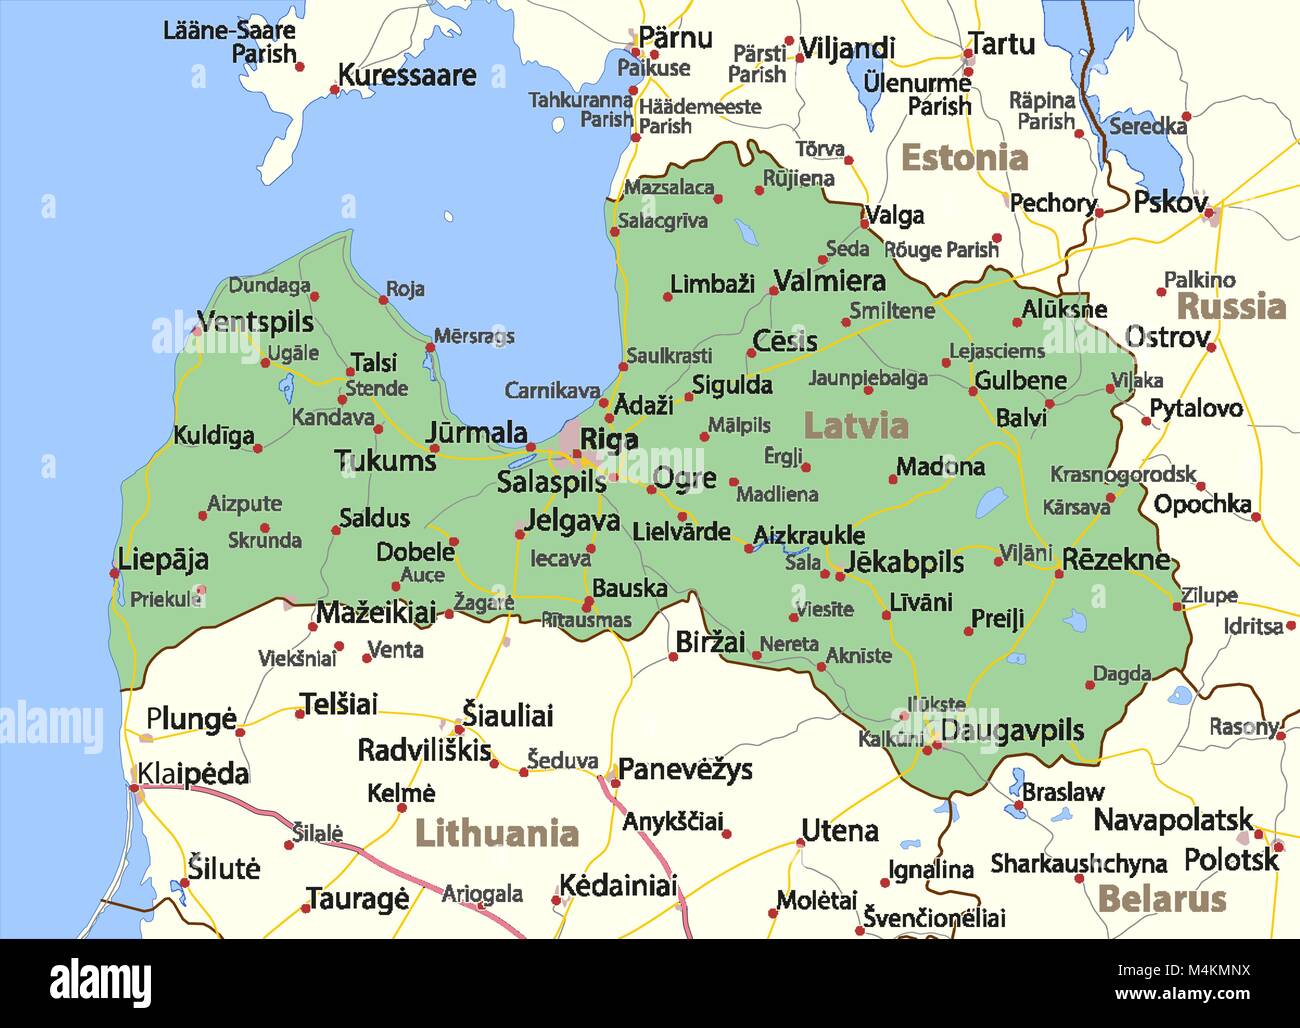 Mappa della Lettonia. Mostra i confini, zone urbane, nomi di località e  strade. Le etichette in inglese dove possibile. Proiezione: proiezione di  Mercatore Immagine e Vettoriale - Alamy